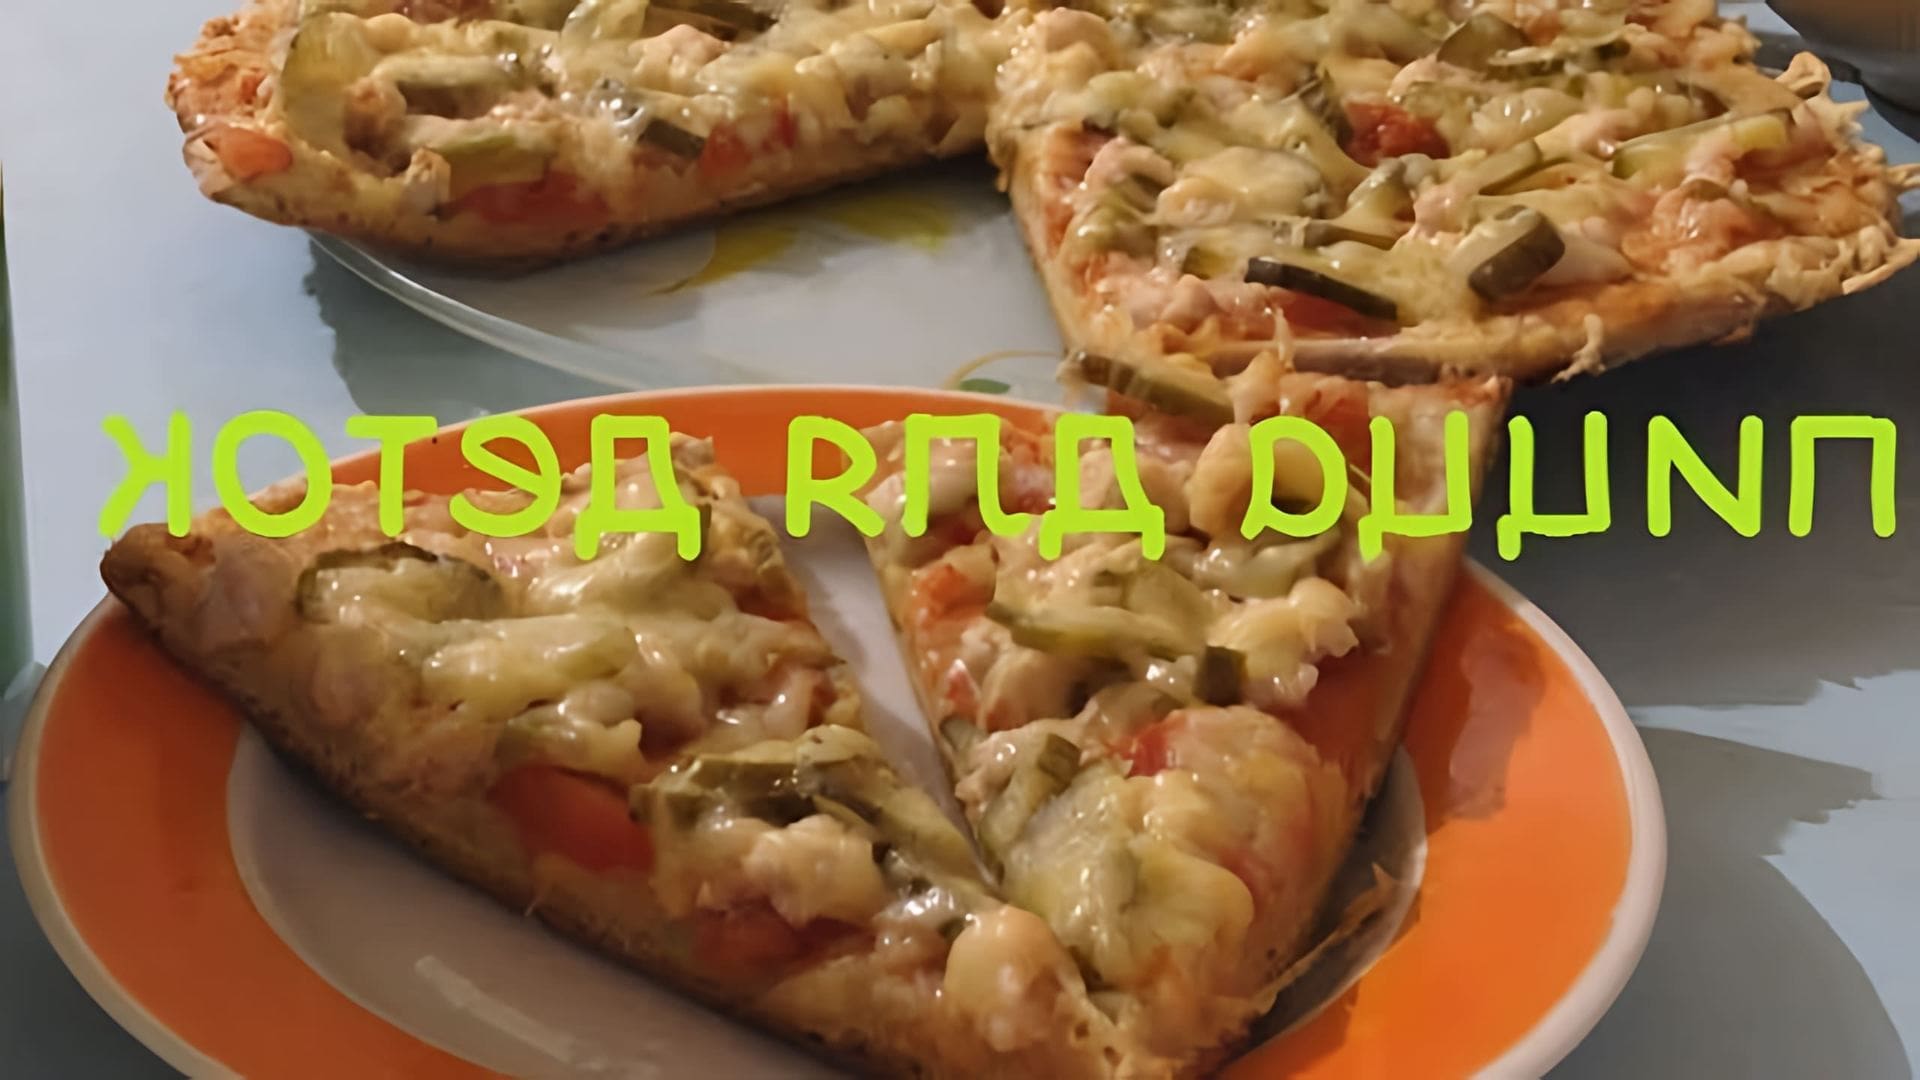 В этом видео демонстрируется процесс приготовления детского меню, а именно пиццы с тестом из сметаны без дрожжей